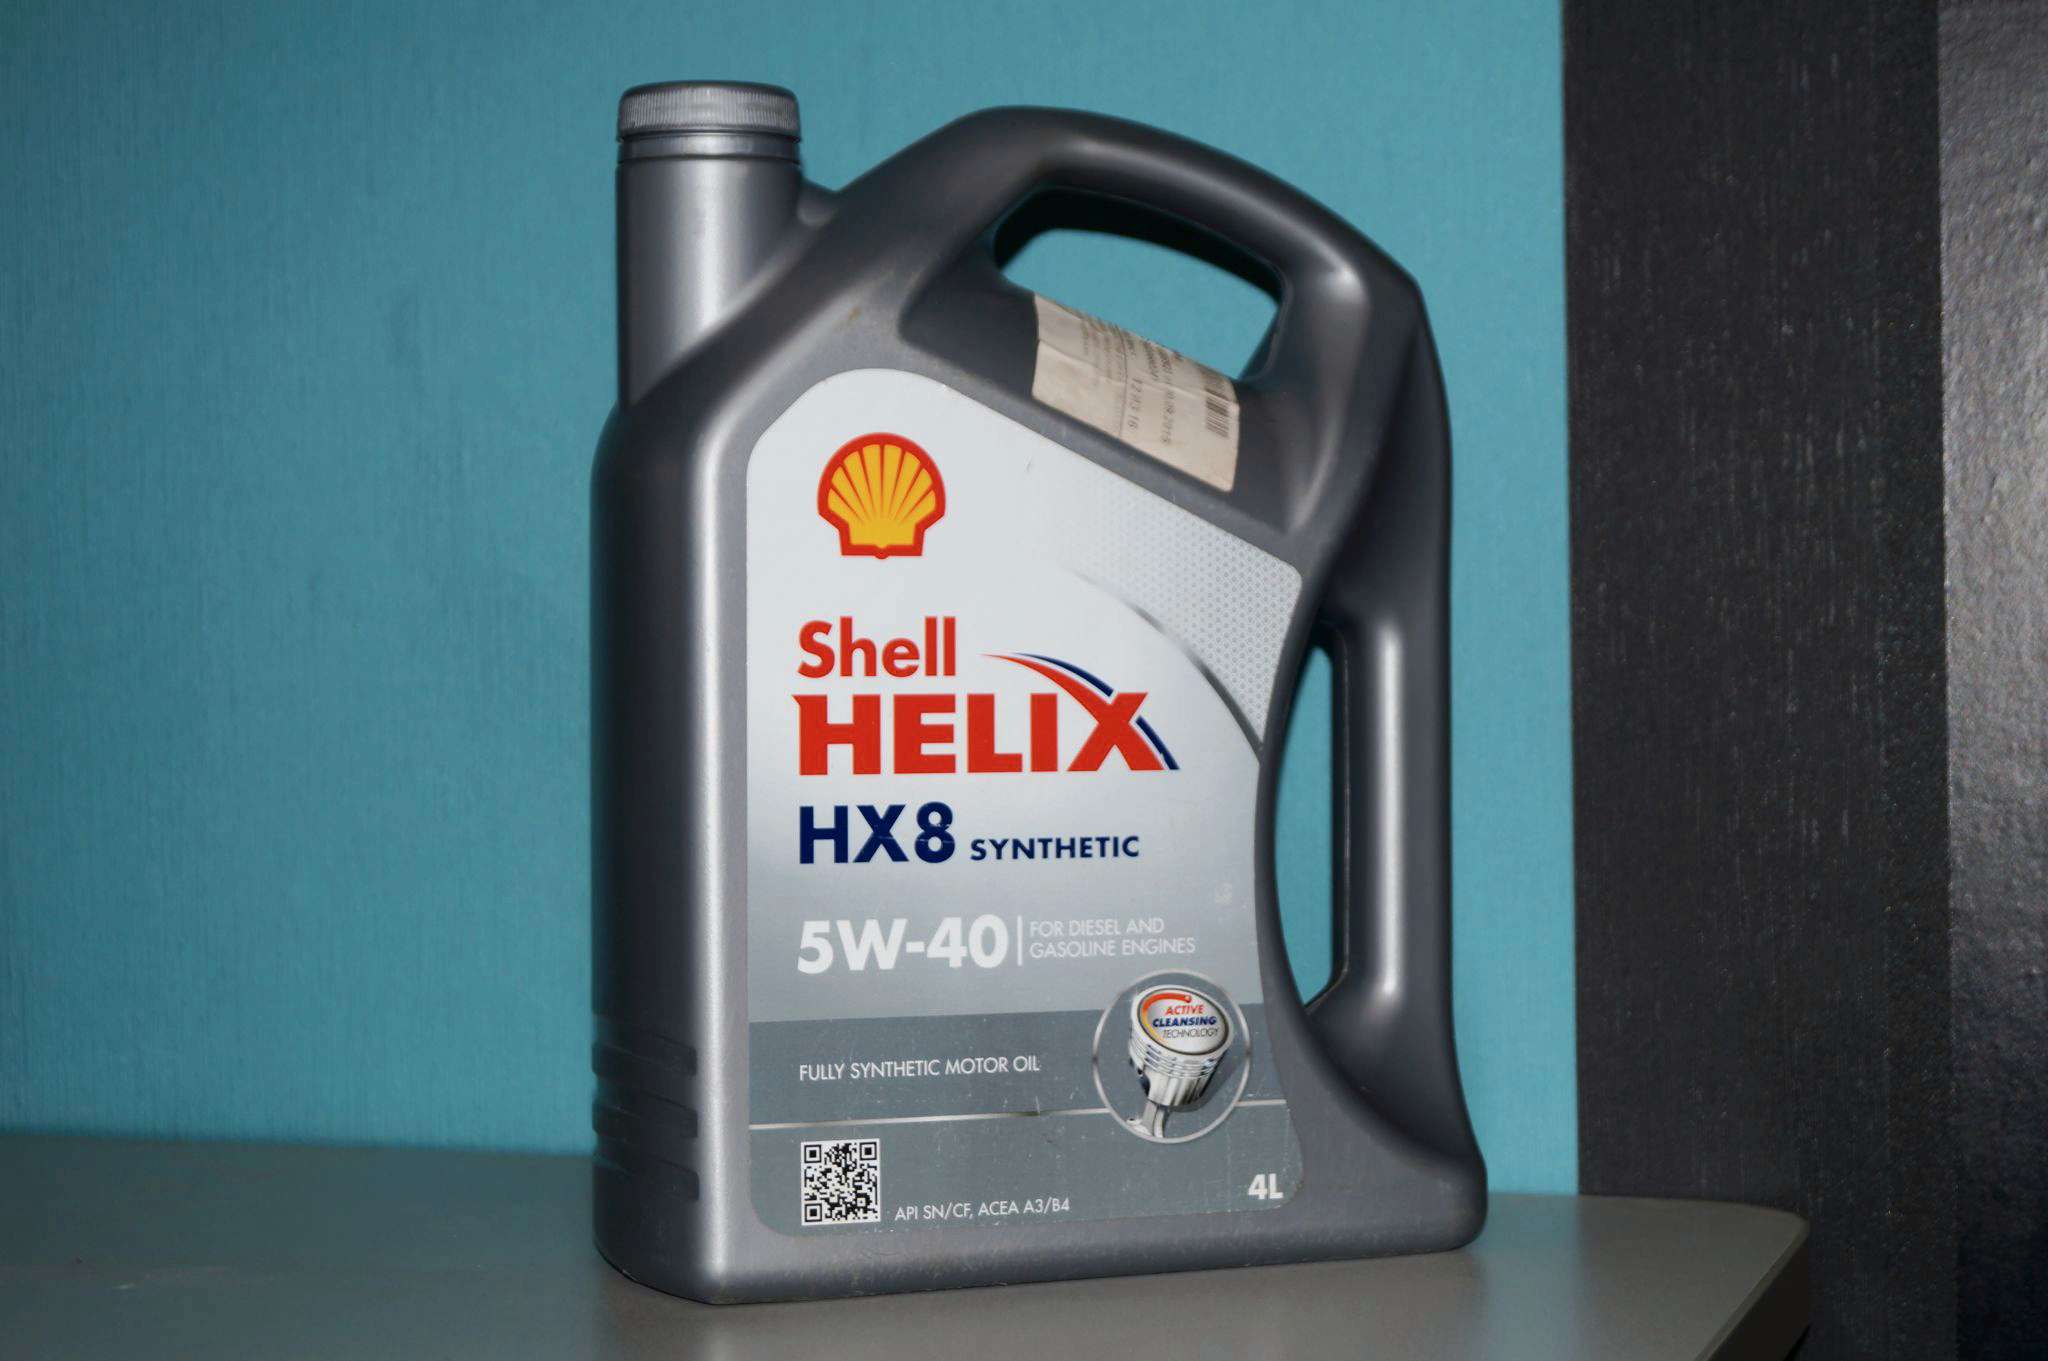 Моторное масло hx8 5w40. HX 8 Synthetic 5w-40. Шелл Хеликс hx8 5w40 синтетика. Shell Helix hx8 Synthetic 5w-40. 550051529 Shell 5w-40,4л/масло/Helix hx8 syn.